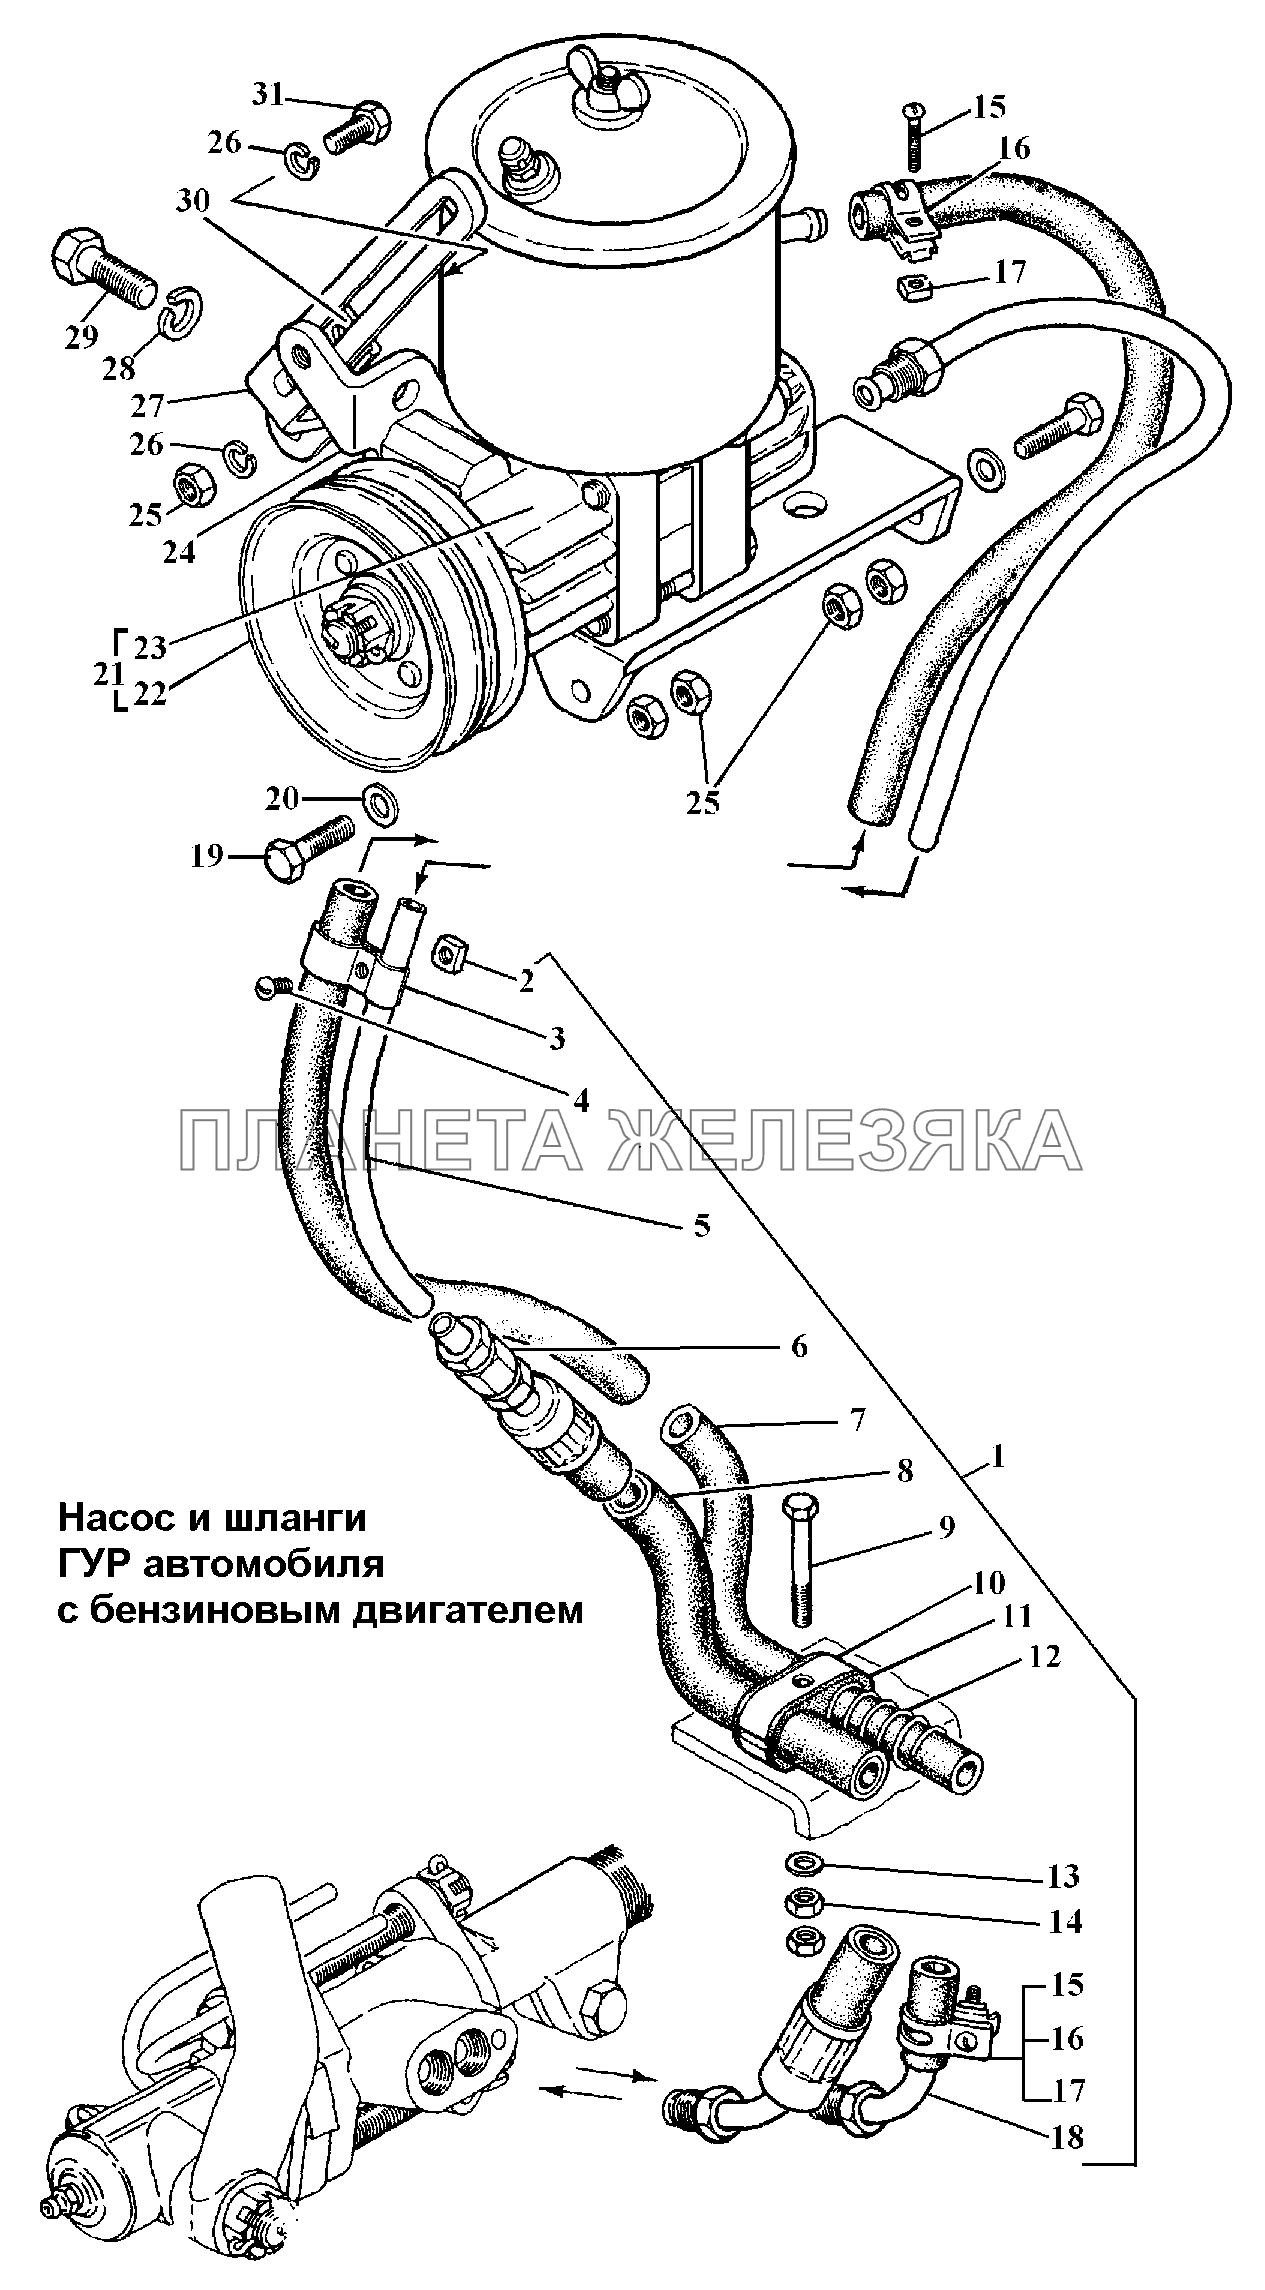 Насос и шланги ГУР автомобиля с бензиновым двигателем ГАЗ-3308